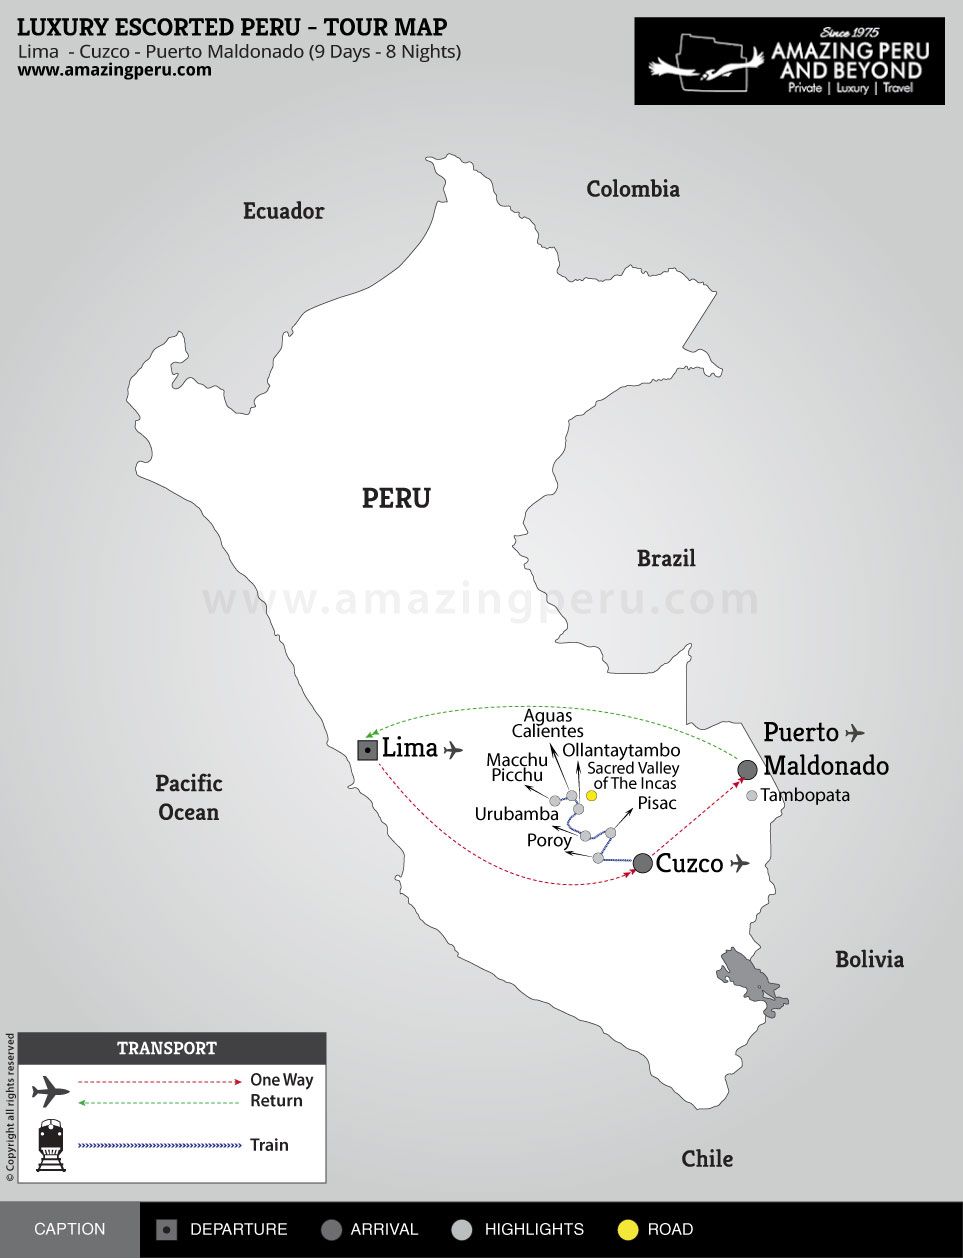 Peru Escorted Escapes Tour 4 - 9 days / 8 nights.